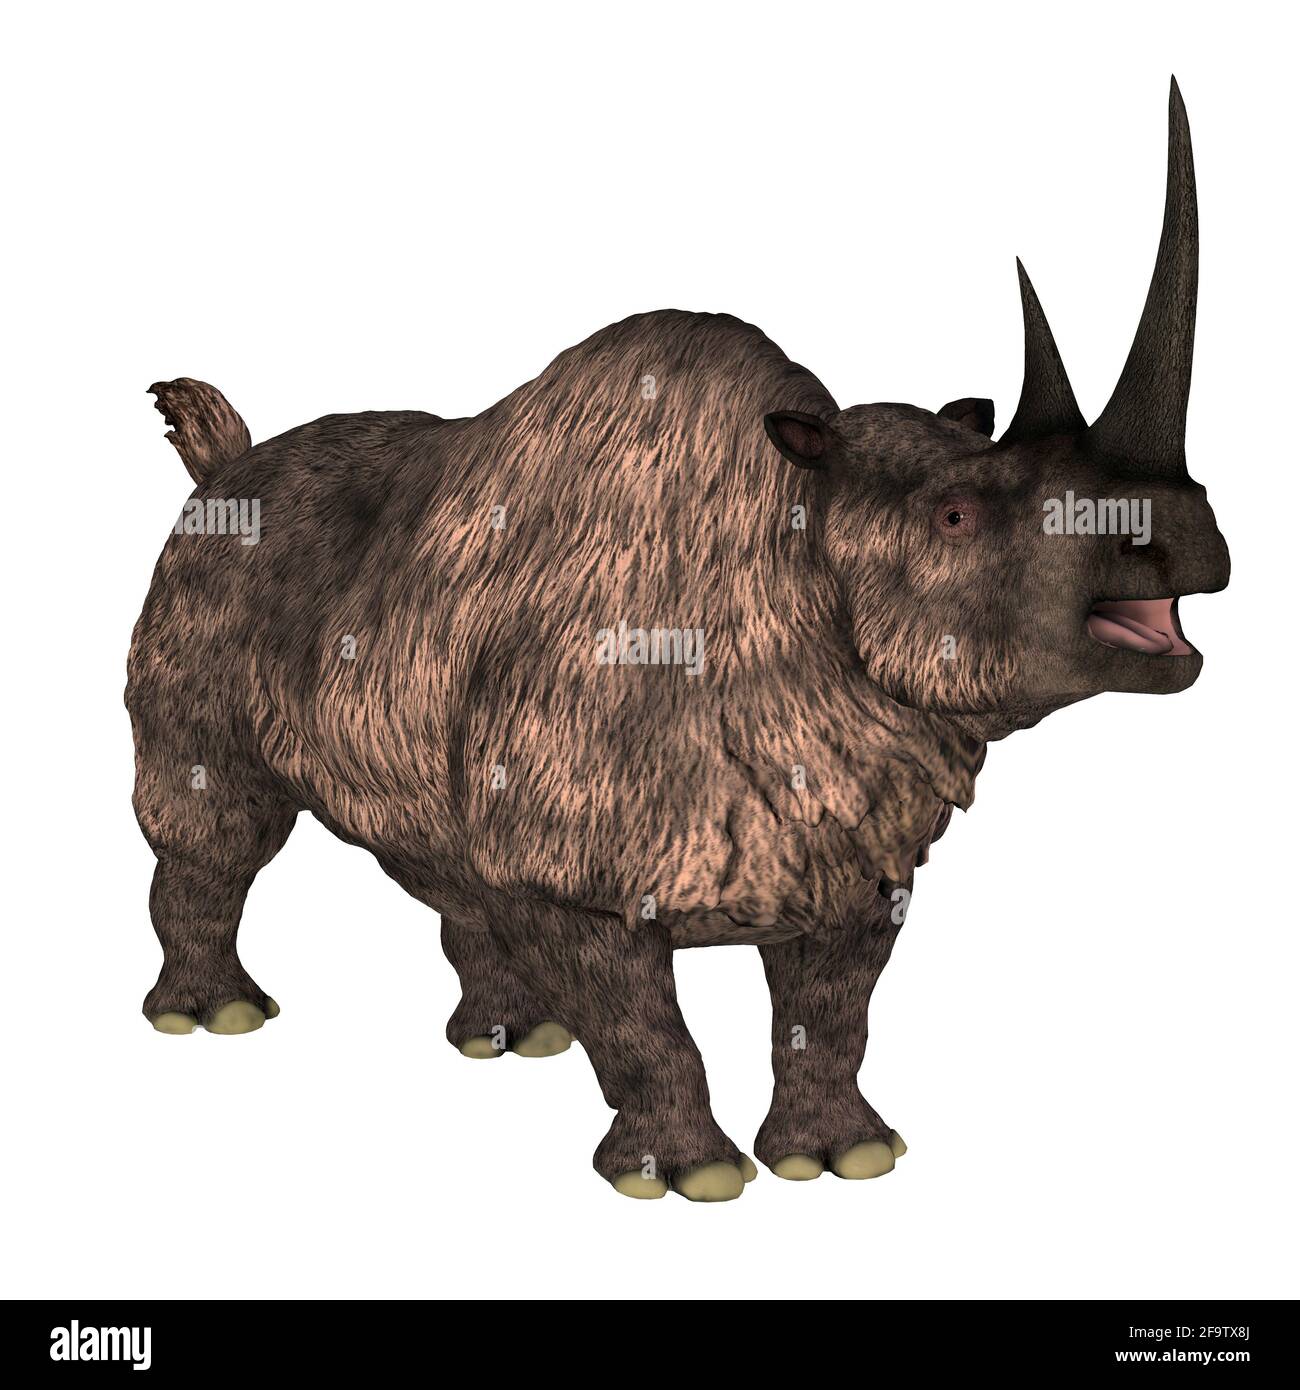 Das Woolly-Nashorn war ein pflanzenfressendes Säugetier, das während der Pleistozän-Zeit in Europa und Asien lebte. Stockfoto